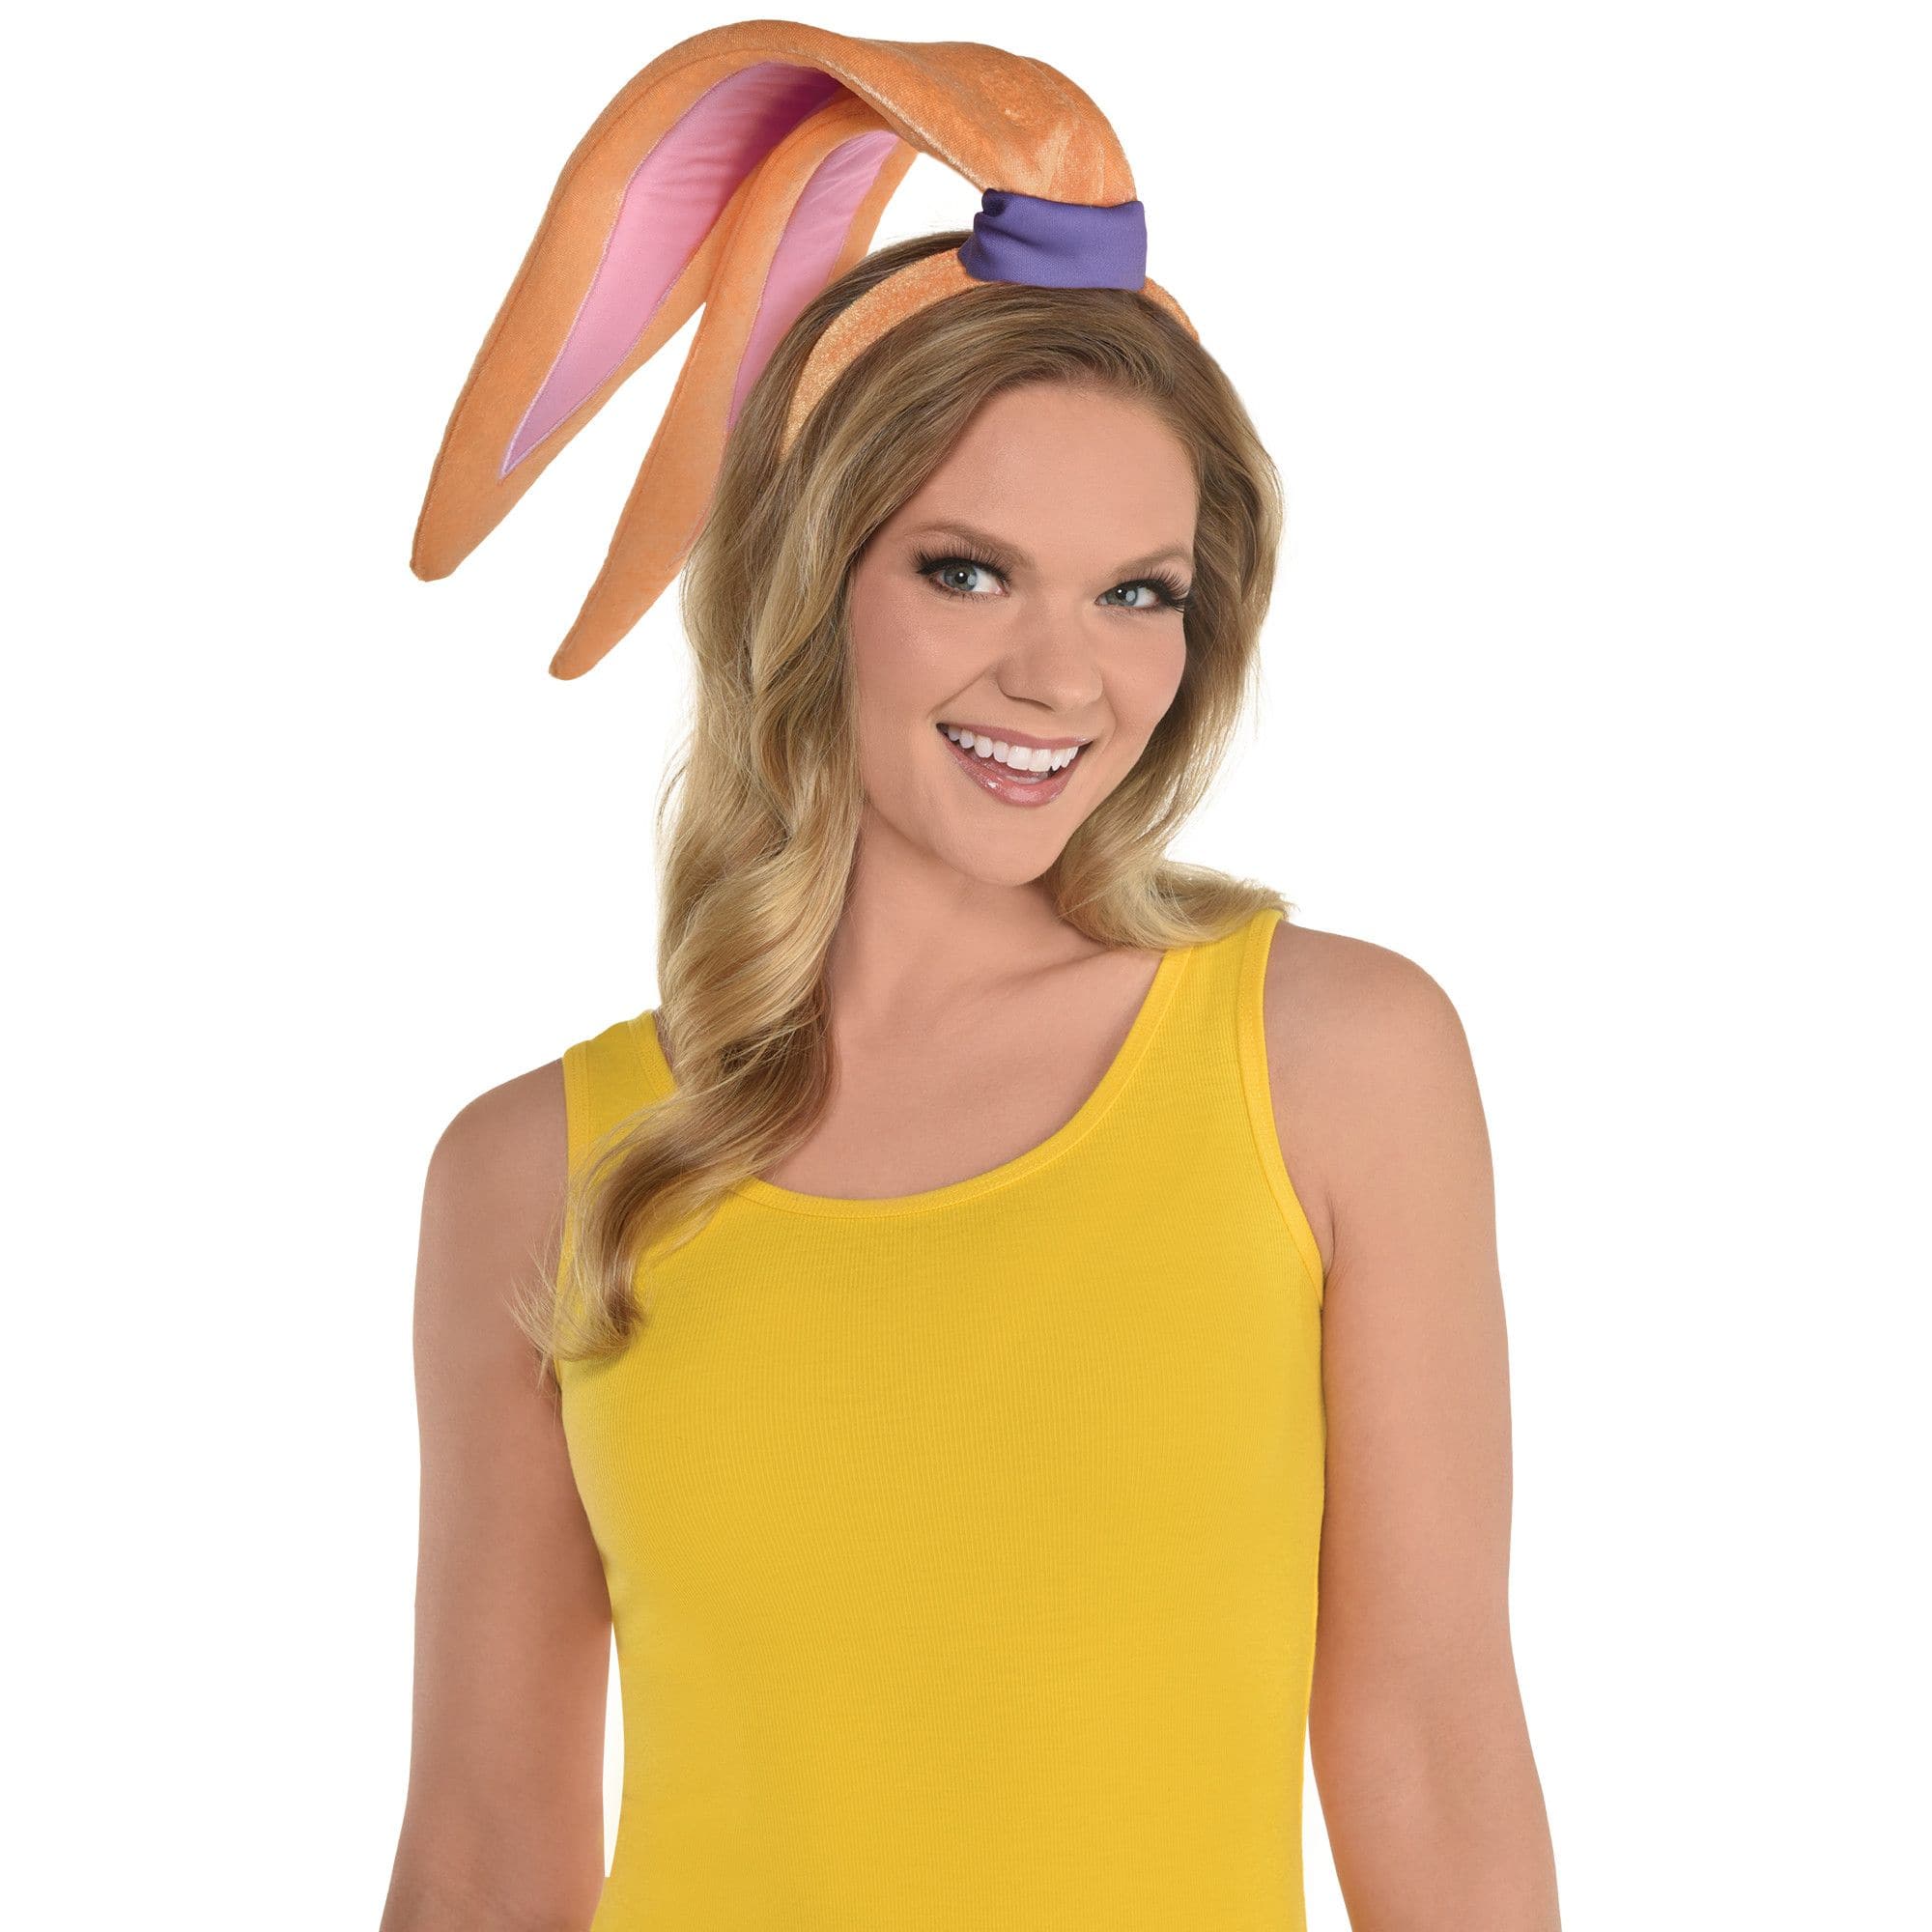 Looney Tunes Bugs Bunny Ears High Quality Headband Halloween